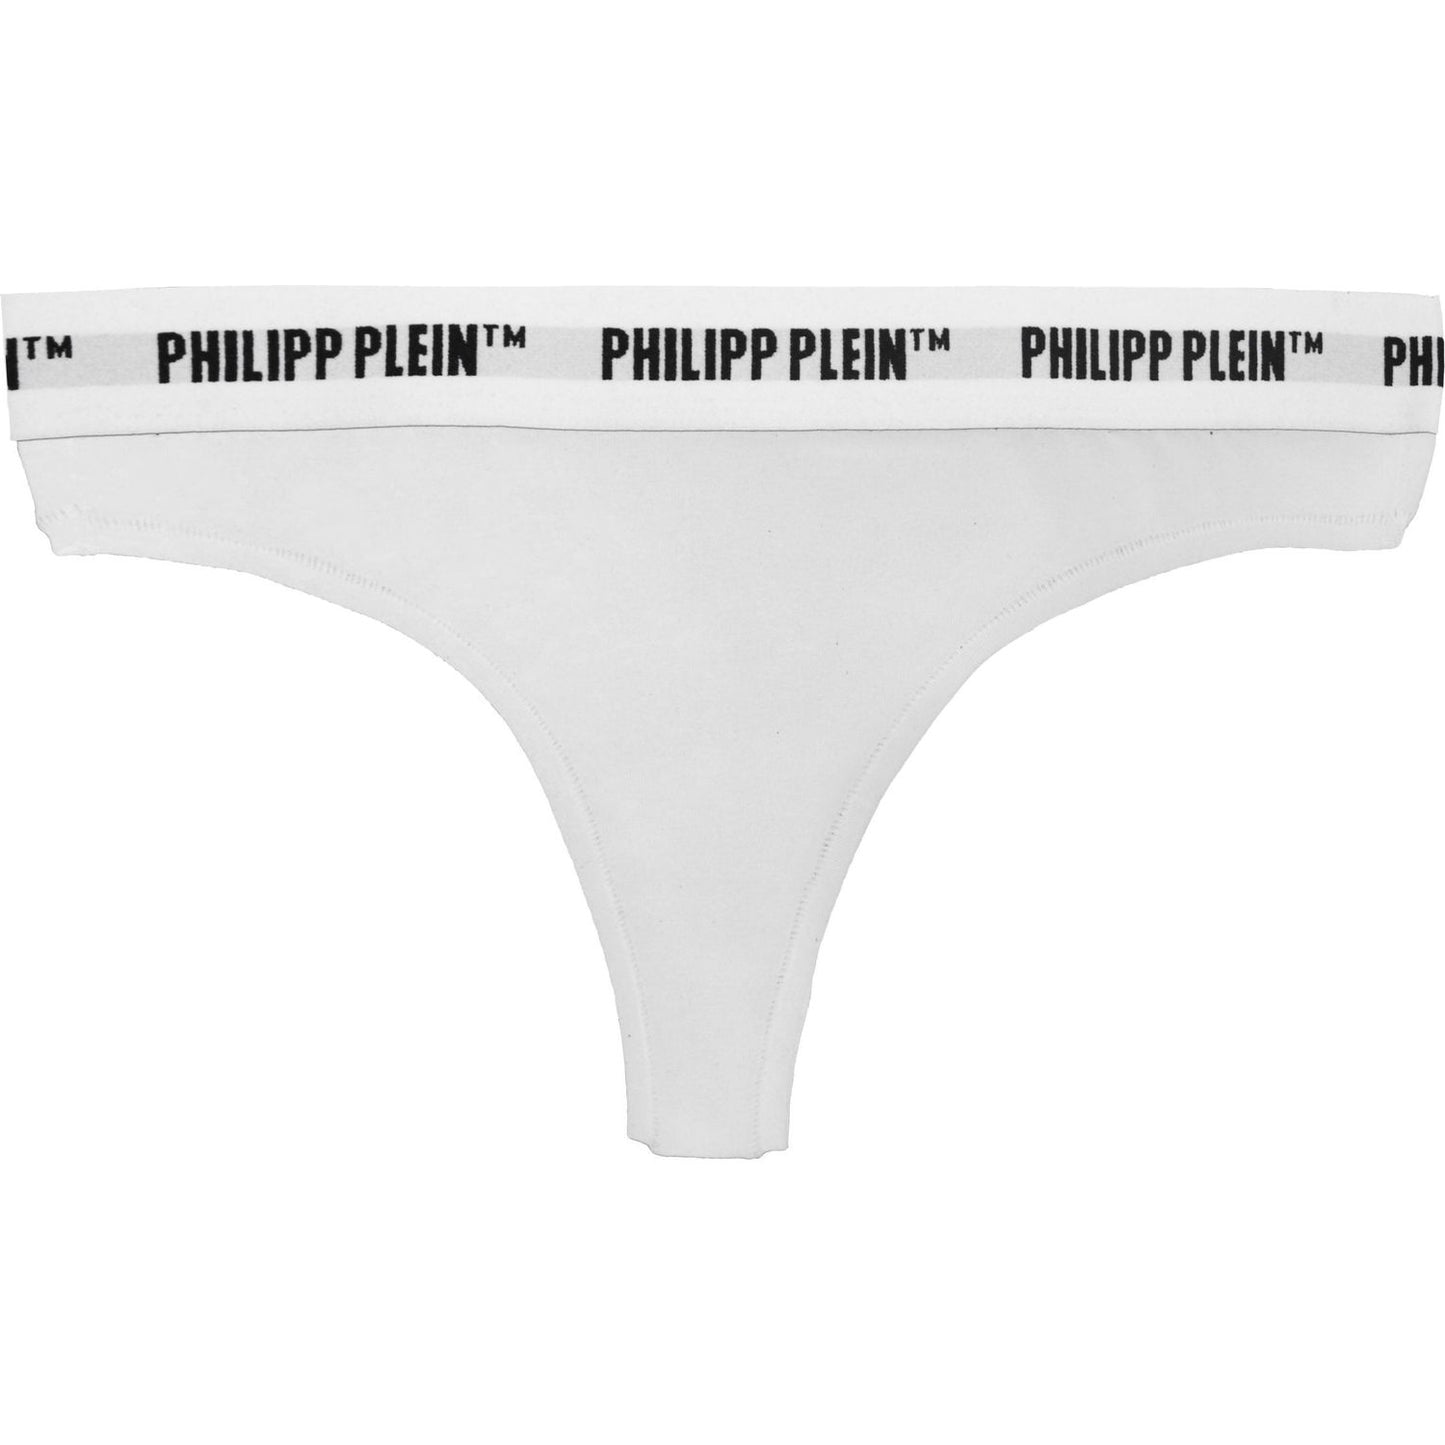 Philippe Model | White Cotton Underwear | McRichard Designer Brands